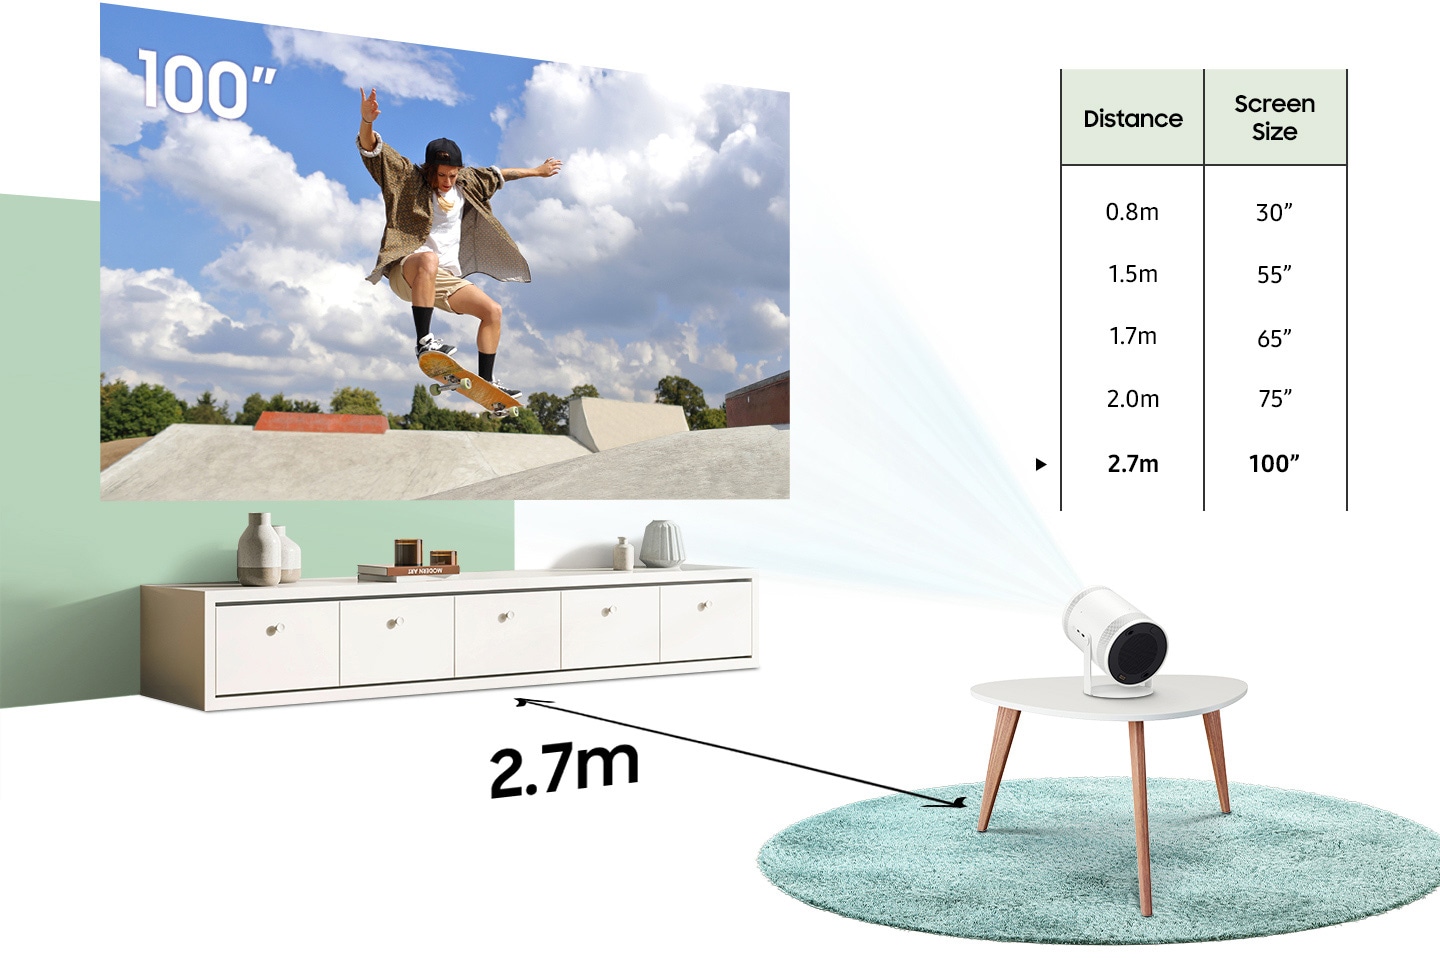 Alors que The Freestyle passe d'une distance de 0,8 mètre d'un mur à 1,5, 1,7, 2,0 et 2,7 mètres, la taille de l'écran projeté passe de 30 pouces à 55, 65, 75 et 100 pouces.